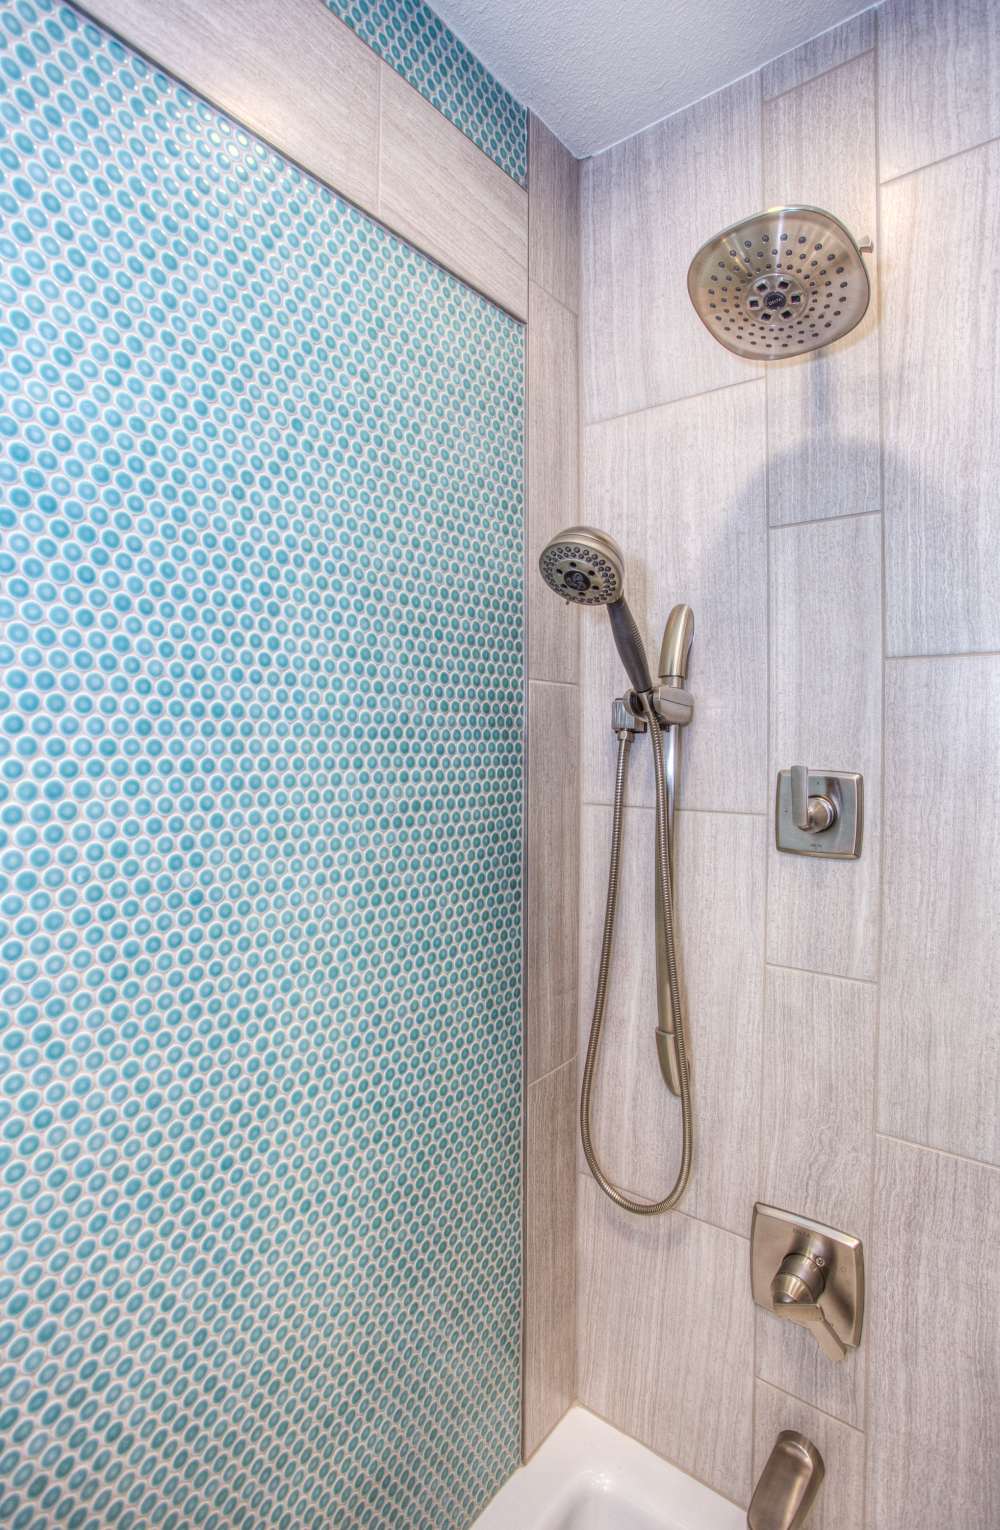 prysznic z ozdobnymi płytkami, niebieska ściana pod prysznicem, kabina z niebieskimi płytkami